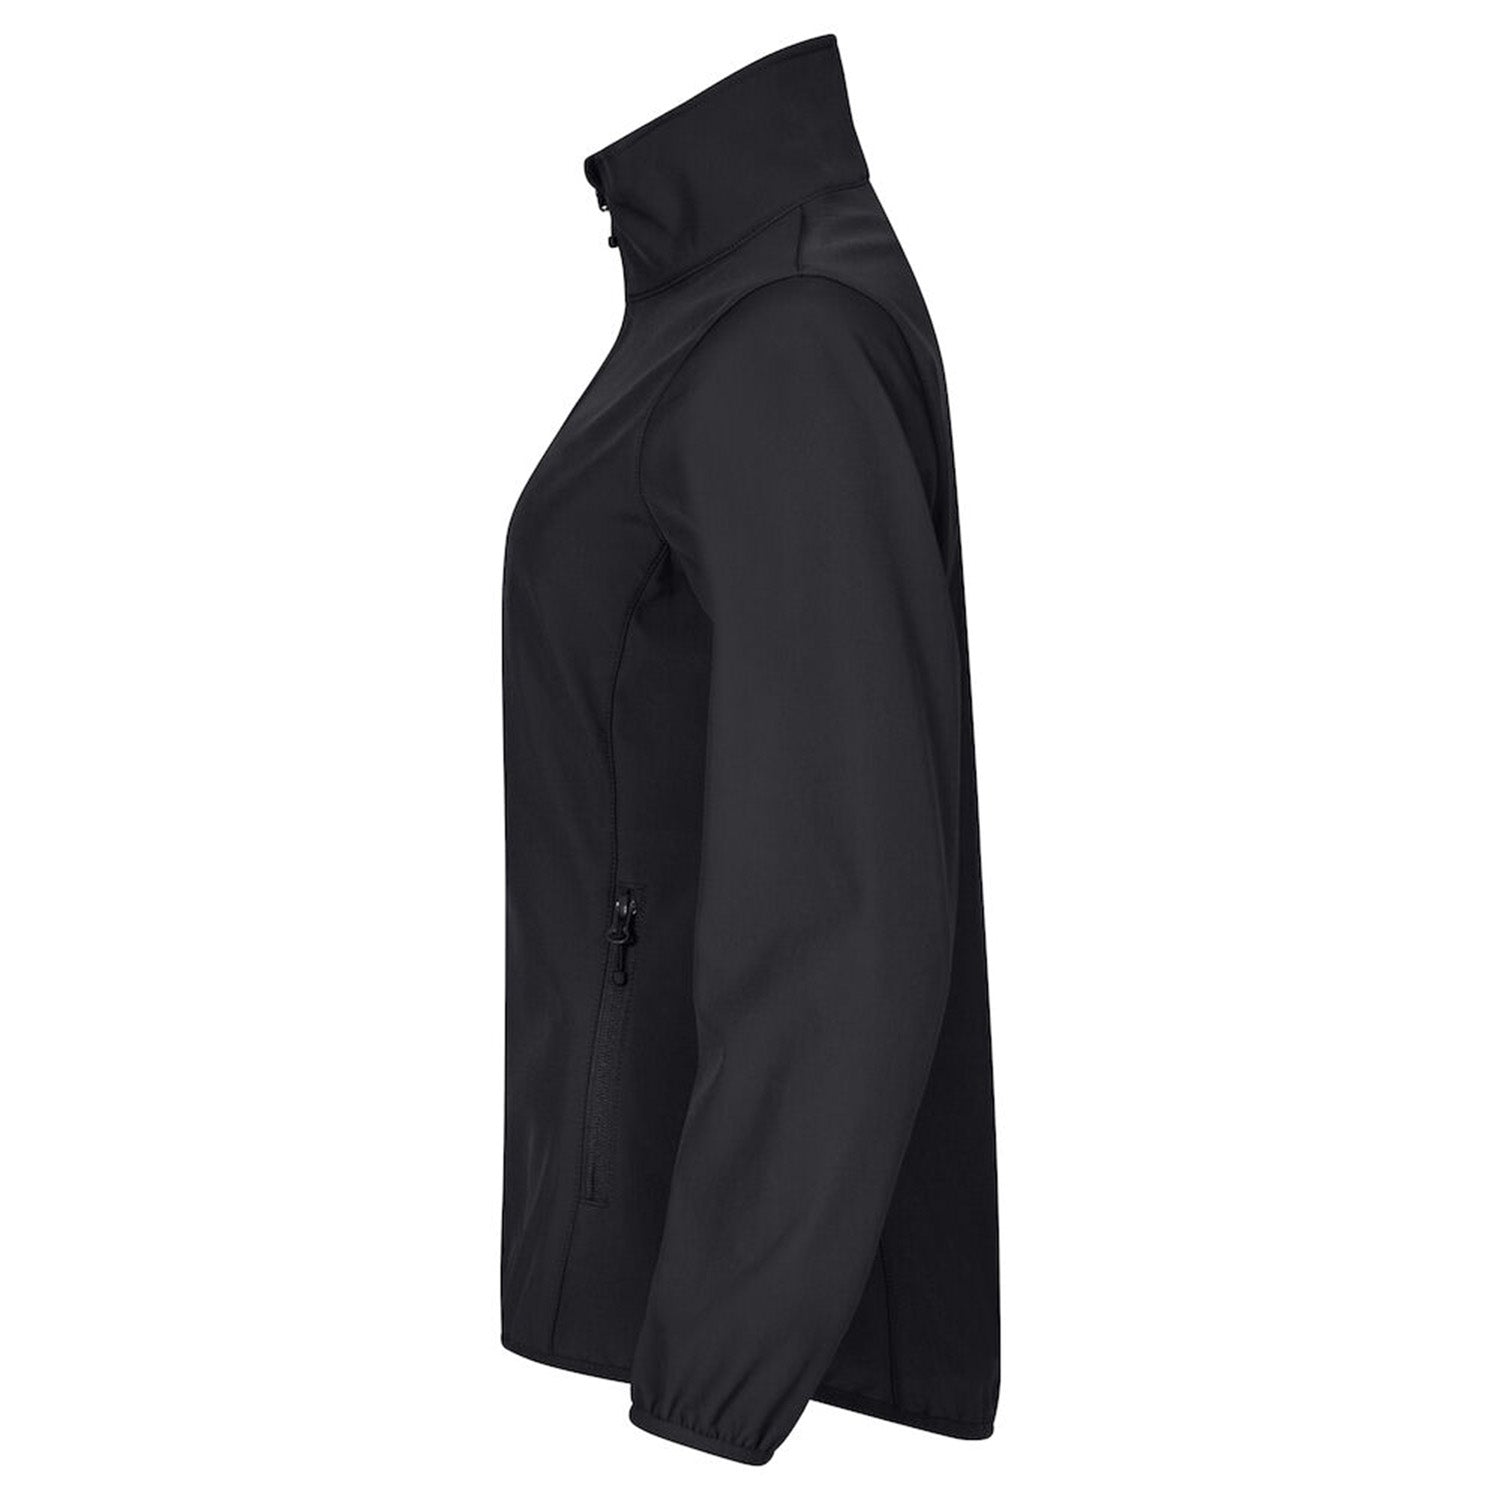 Clique Beveiliging Softshell jas Dames Zwart met Borst- en Ruglogo - van Clique - Nu voor maar €49.95 bij Workwear 2 Day